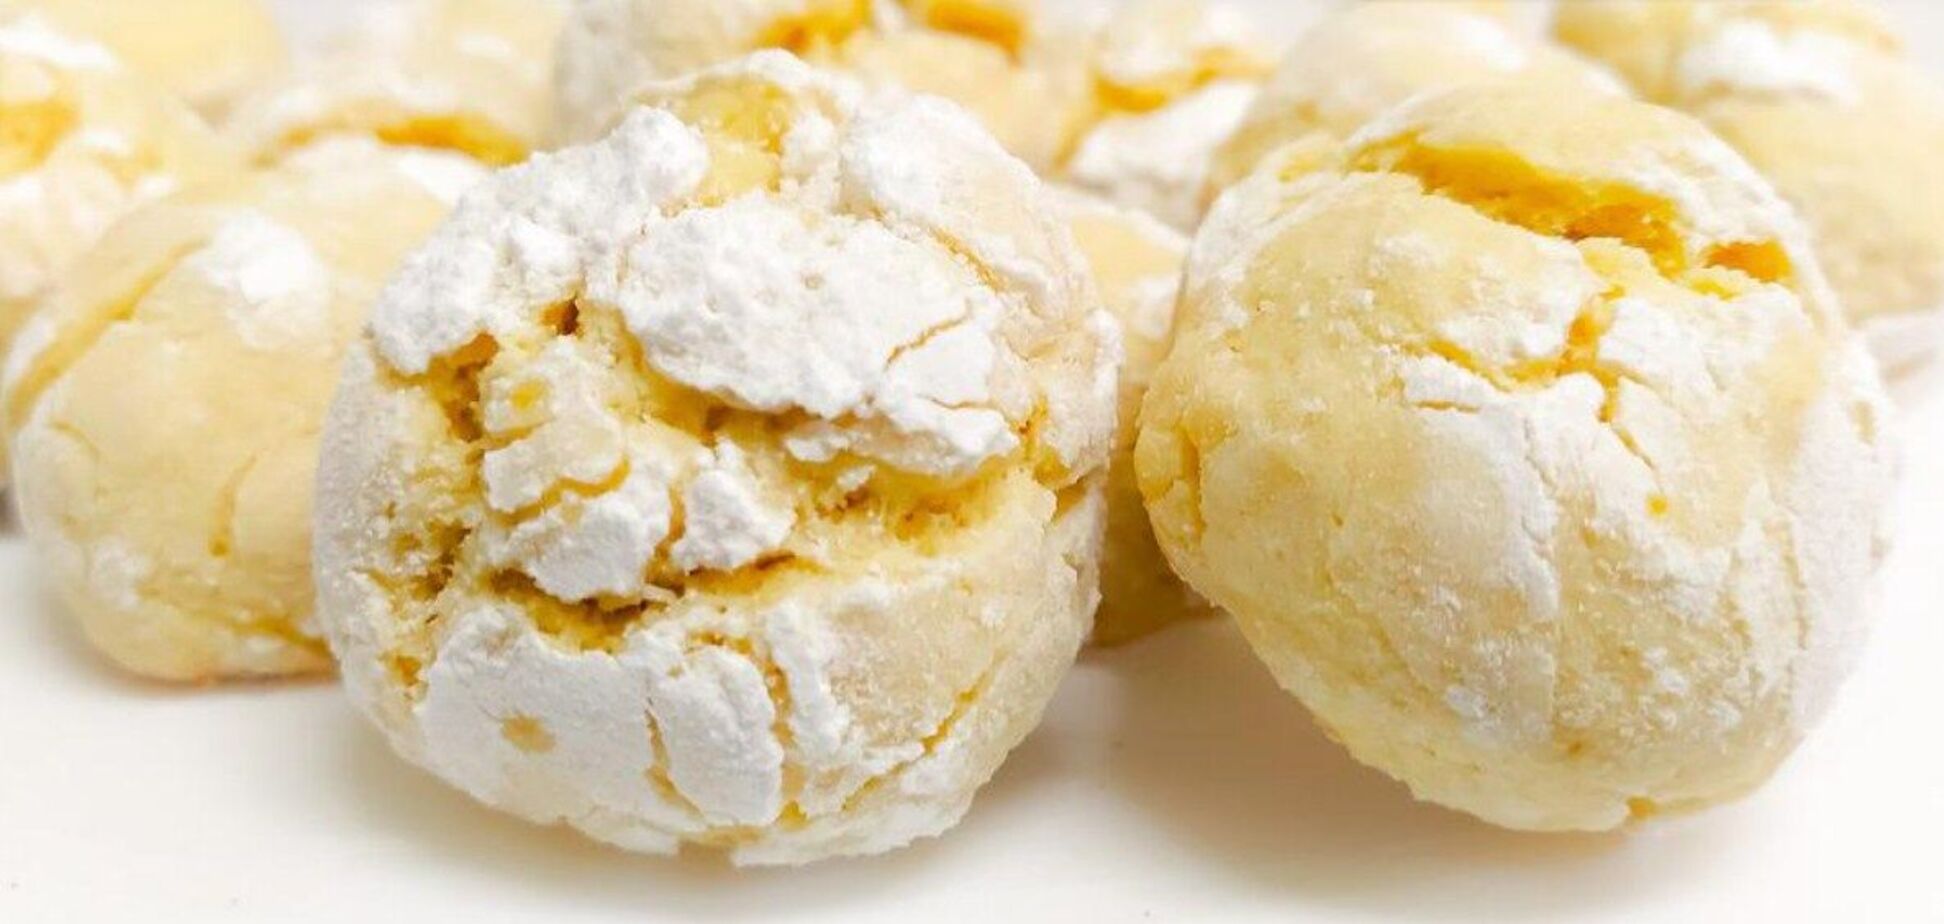 Лимонное печенье с трещинками 'Цитринка': ароматное и долго не черствеет